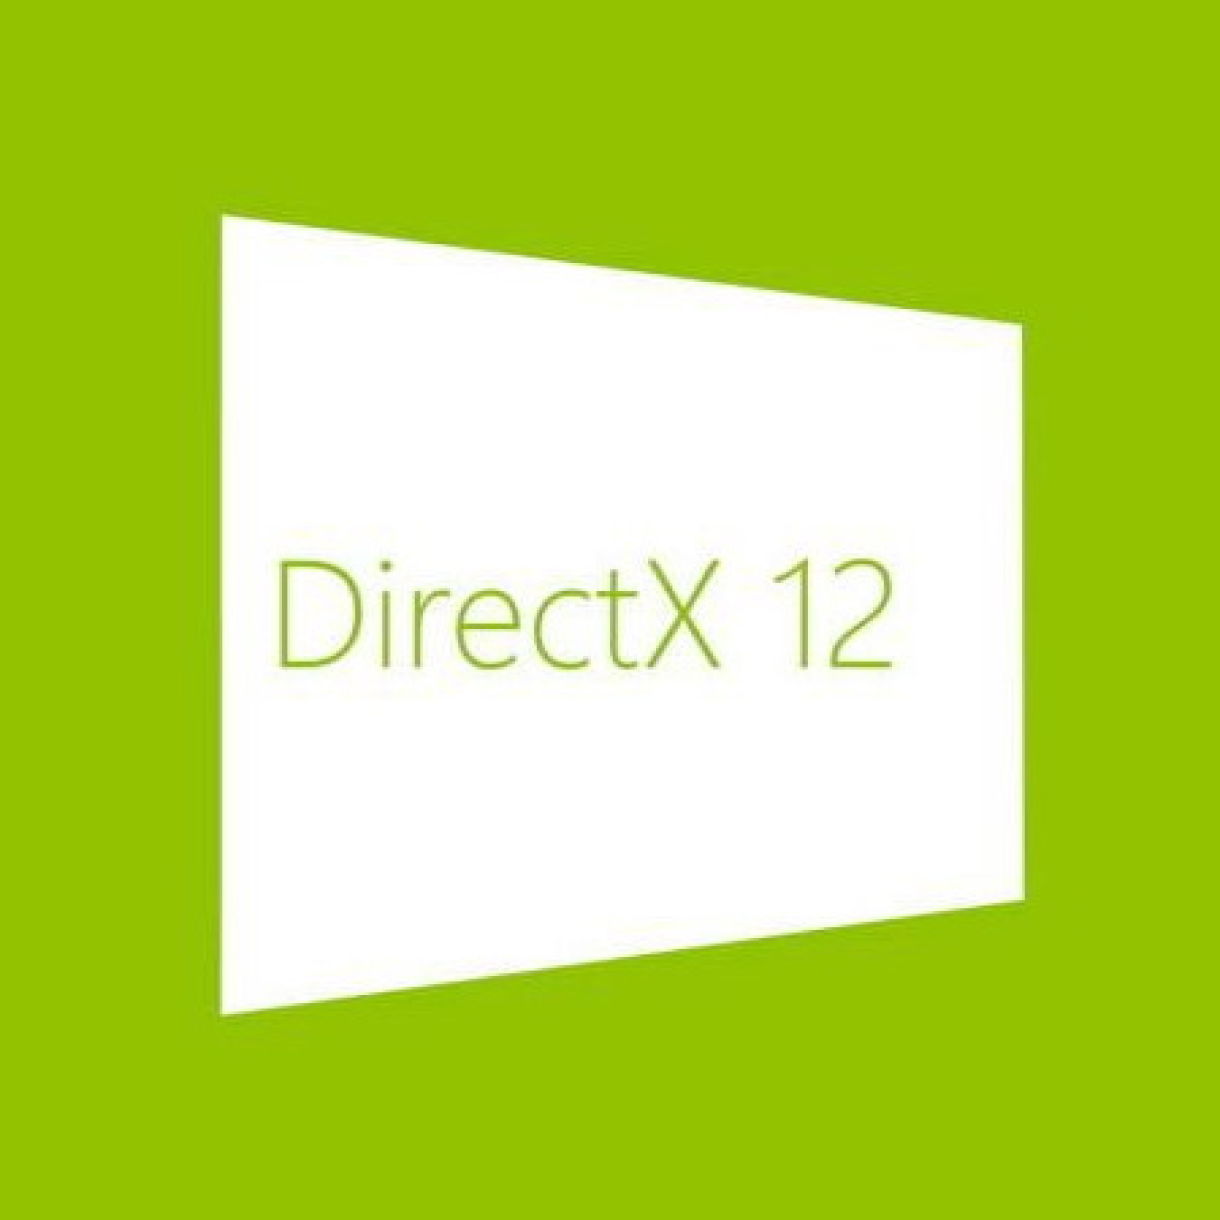 DIRECTX 12. DIRECTX 12 Ultimate. DIRECTX. DIRECTX 12 logo.